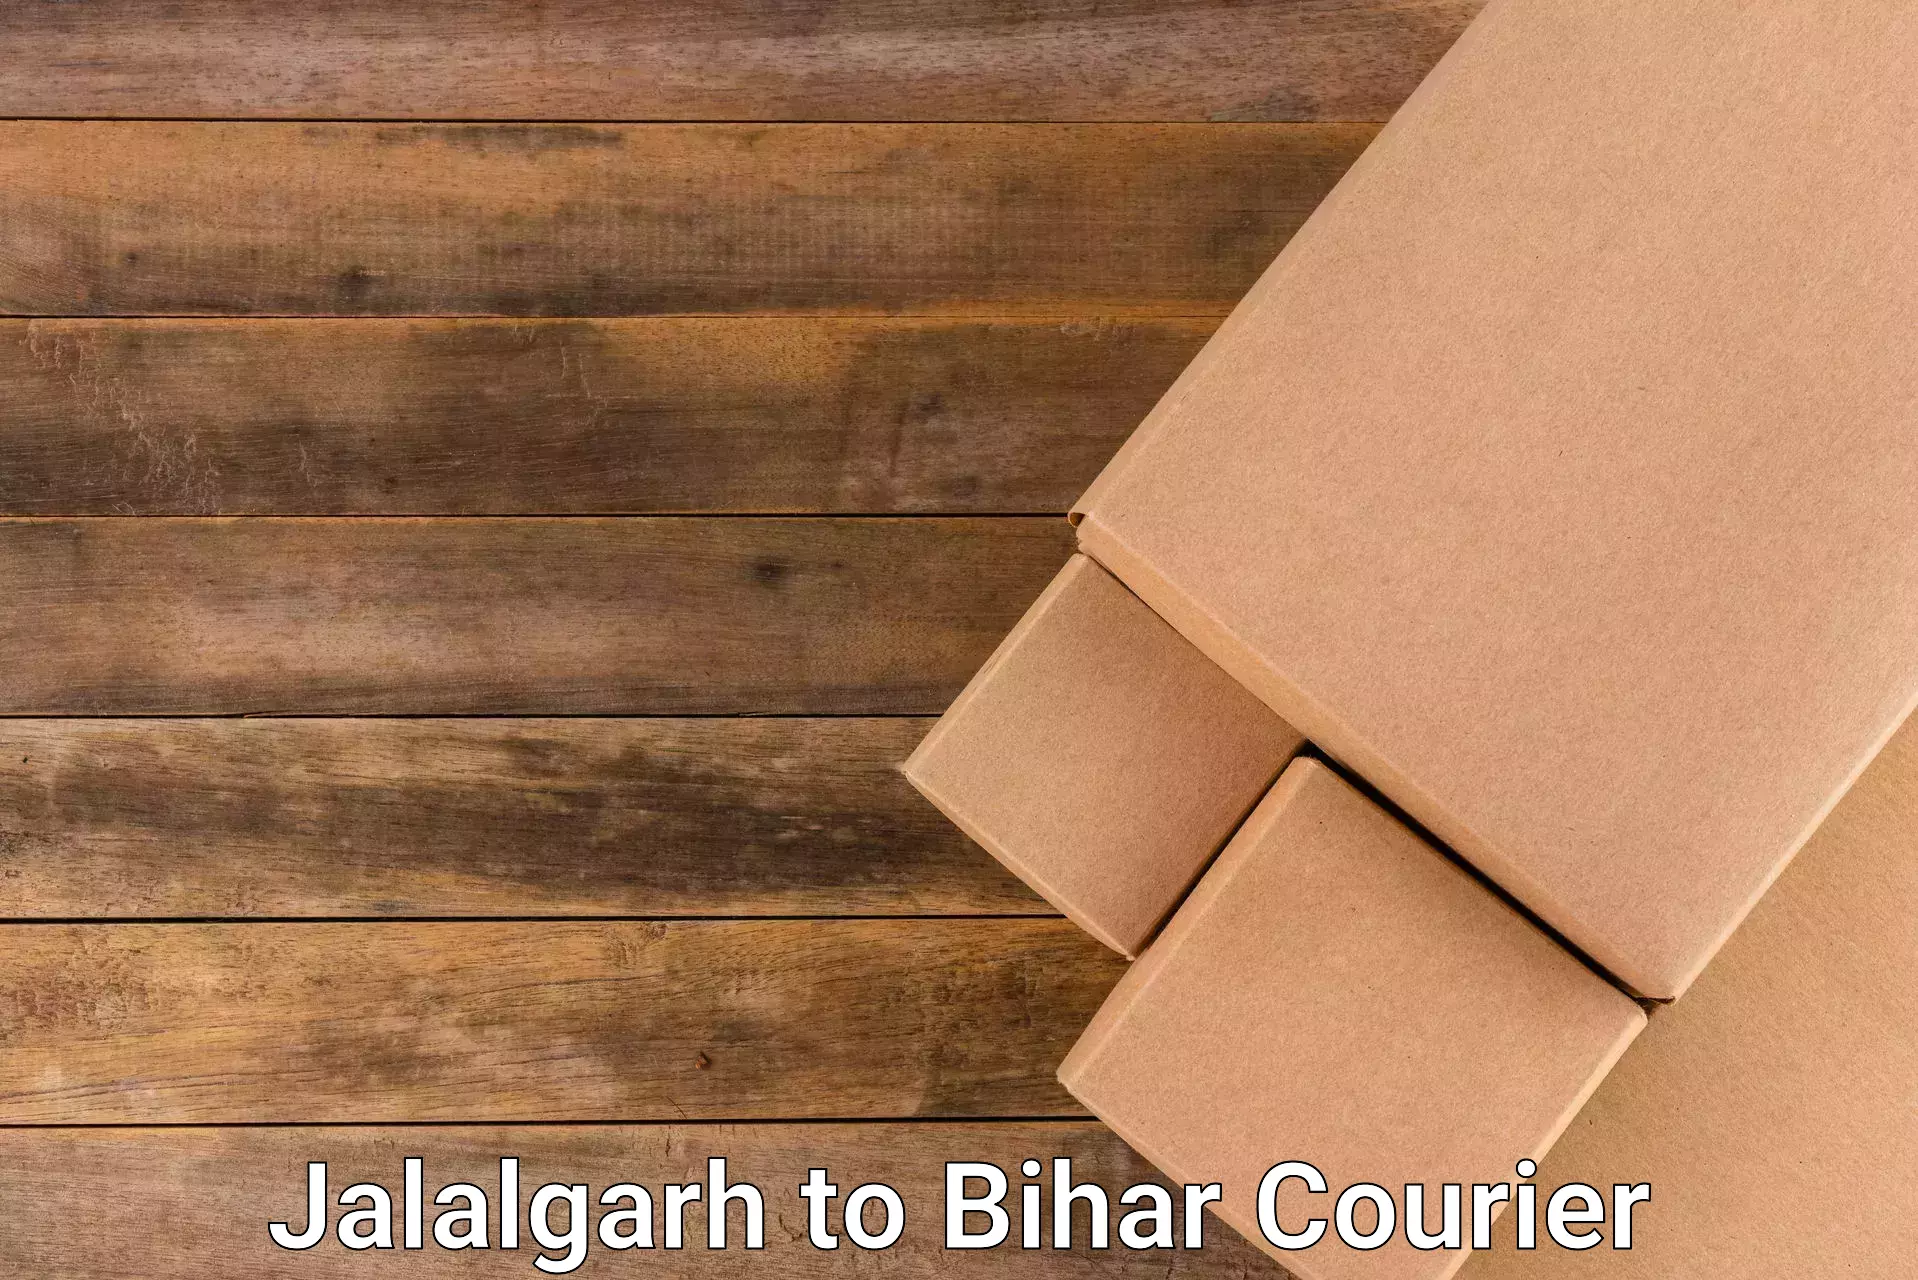 Nationwide parcel services Jalalgarh to Kishanganj